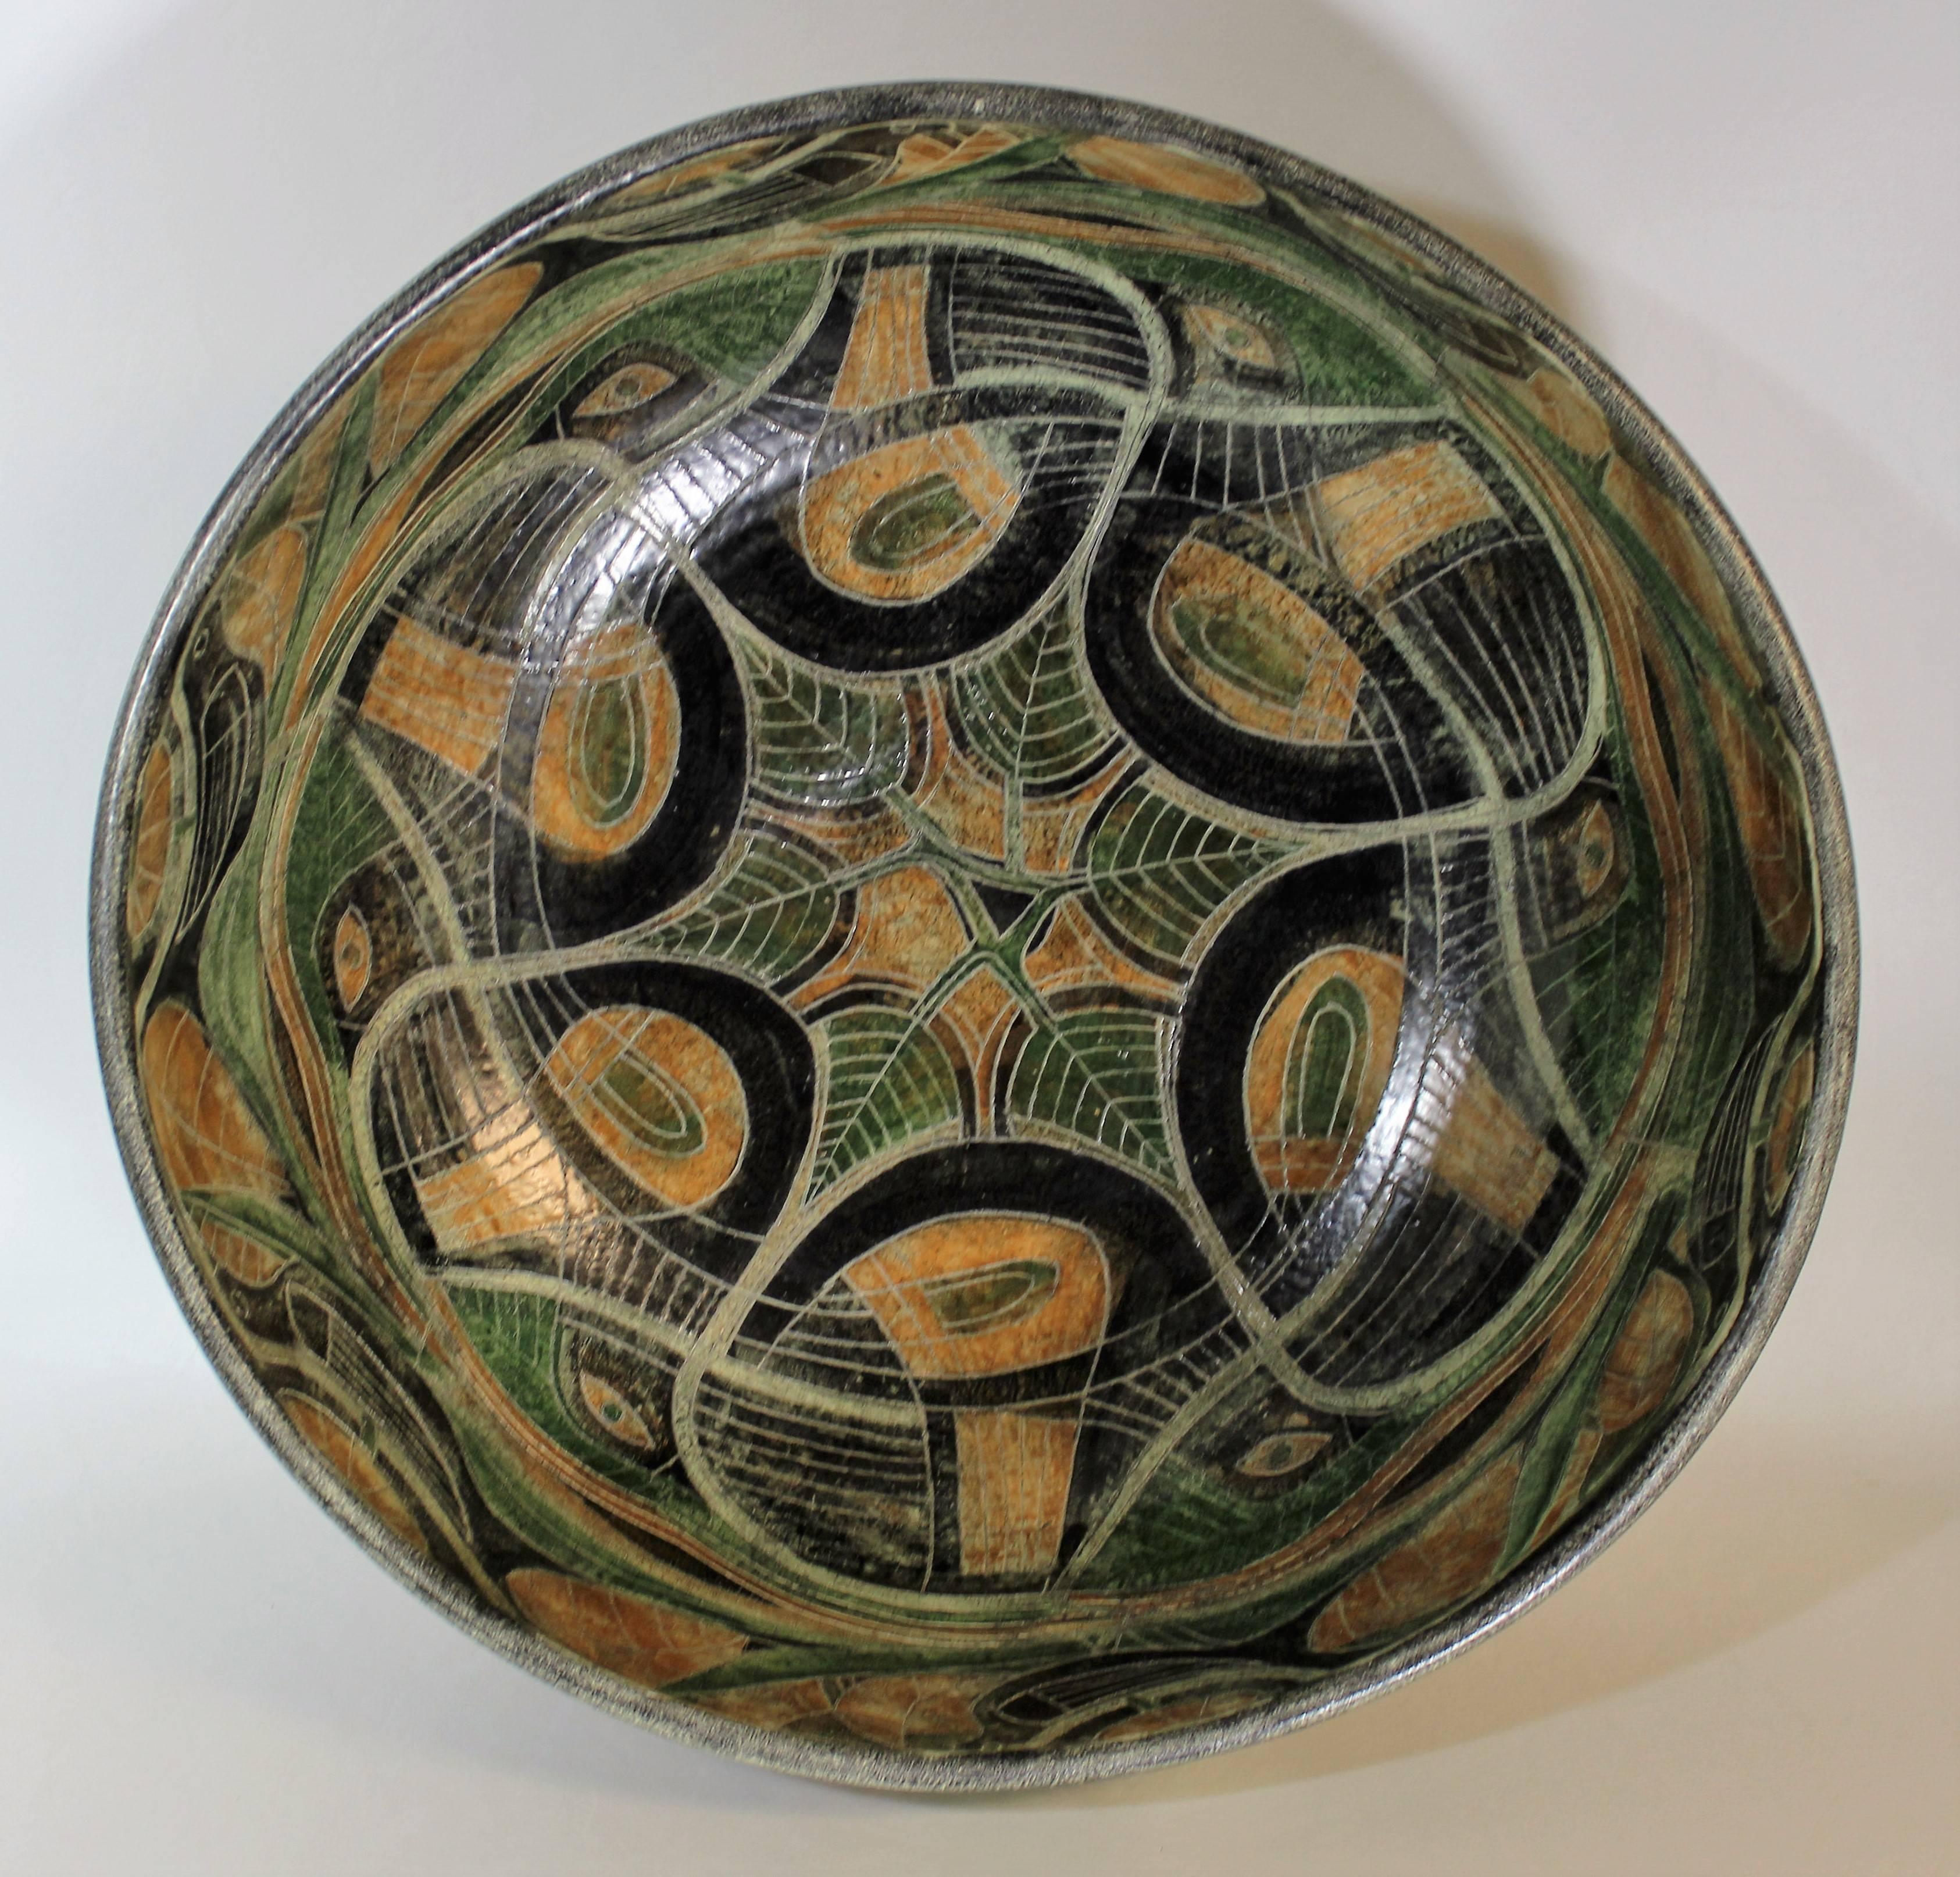 Bol moderne du milieu du siècle en poterie de Studio par Theo et Susan Harlander de Brooklin Pottery, Brooklin, Ontario. Ce bol a été conçu dans un esprit cubiste fantaisiste, avec des couleurs riches et une finition de glaçure mate. Il présente une